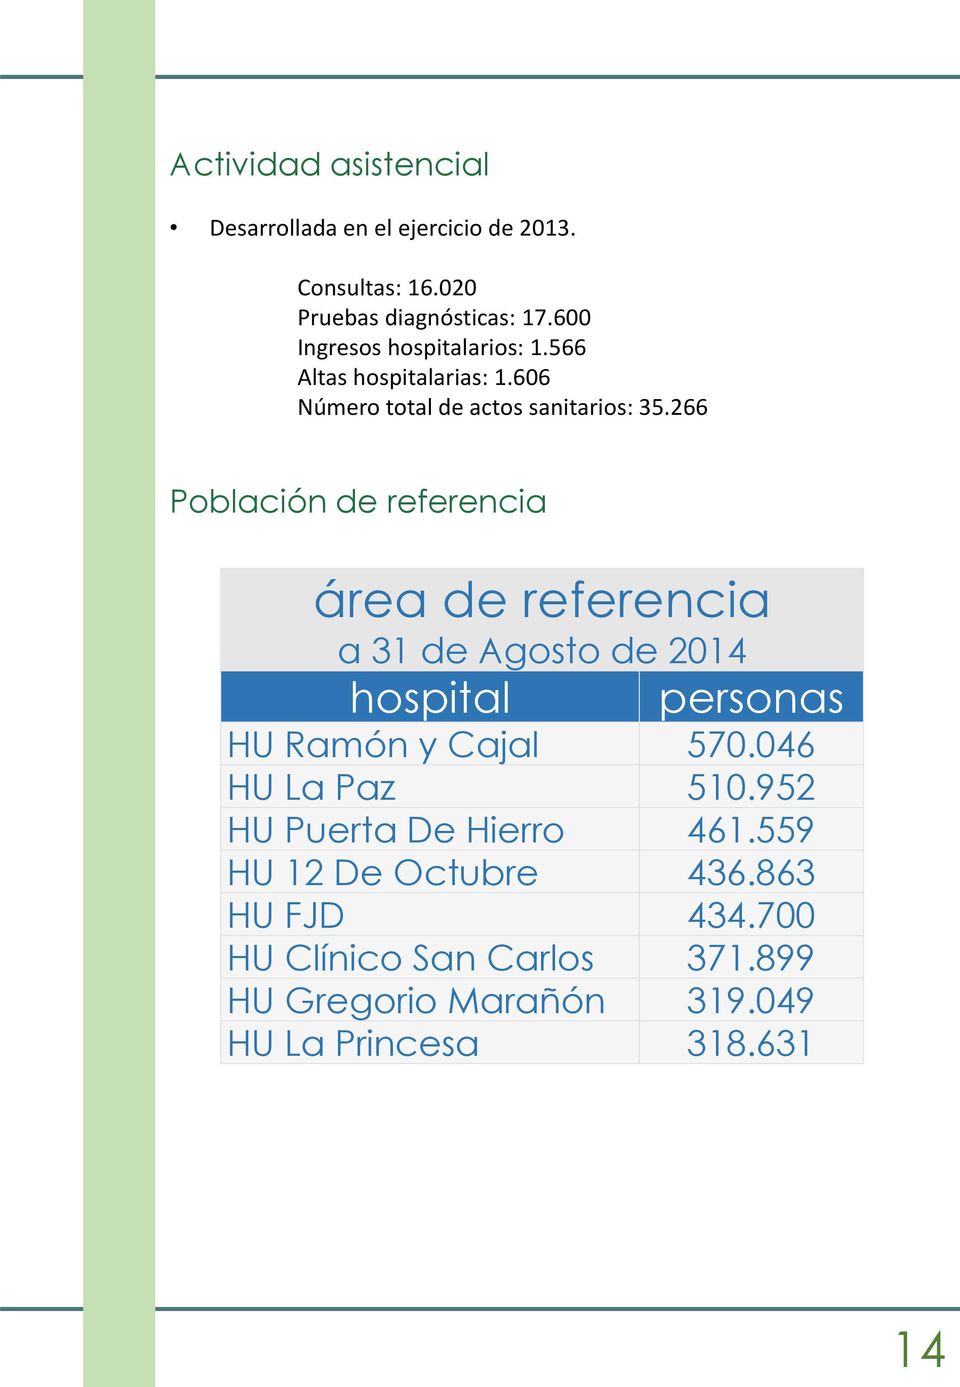 266 Población de referencia área de referencia a 31 de Agosto de 2014 hospital personas HU Ramón y Cajal 570.